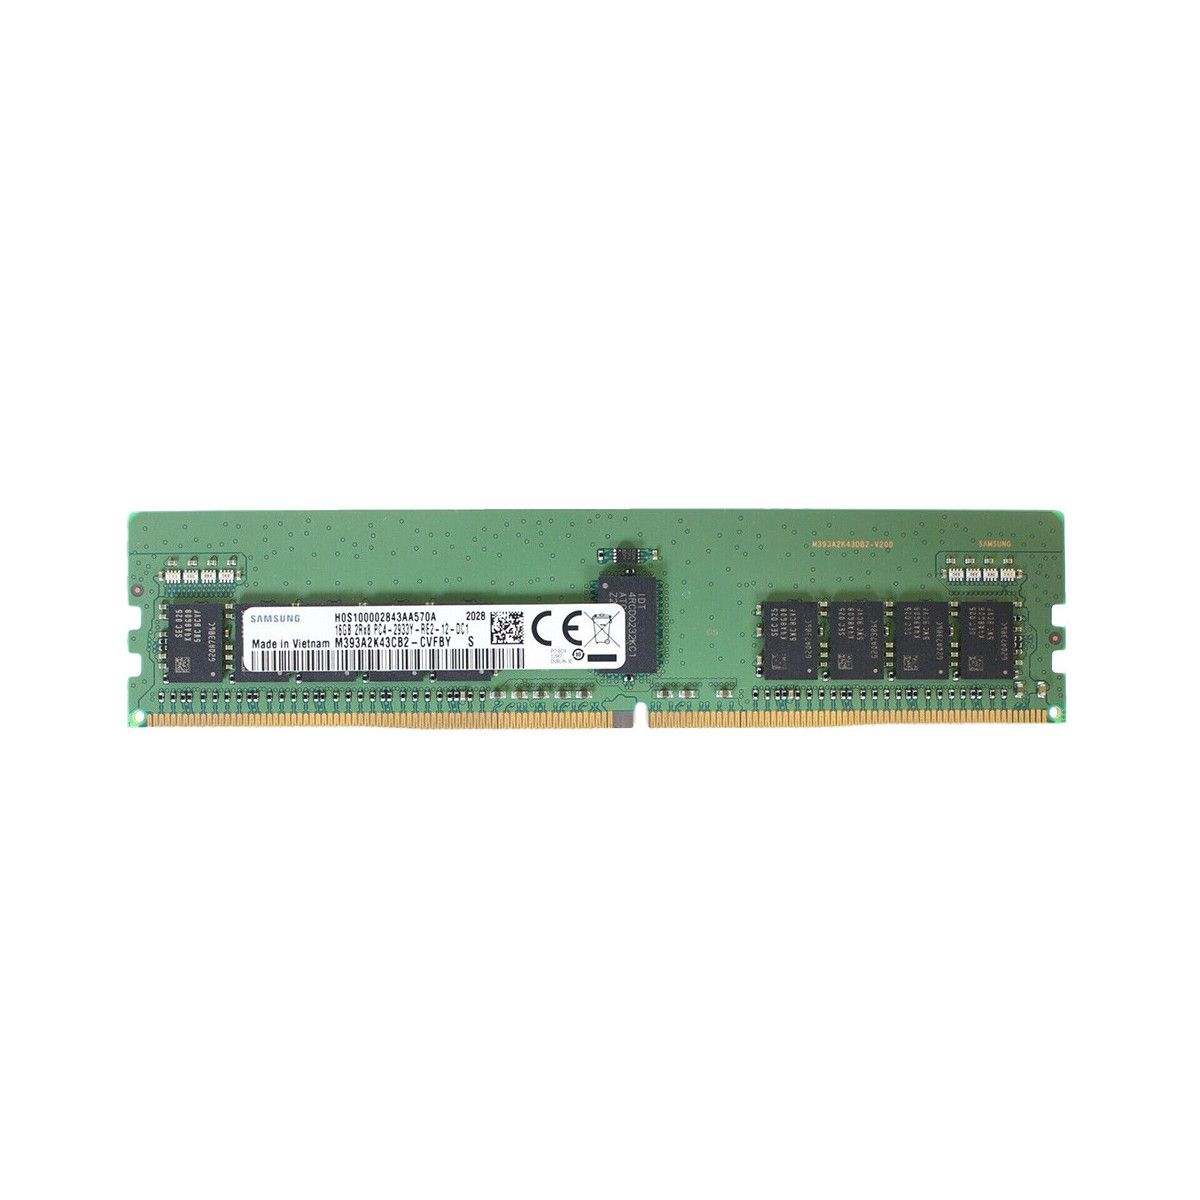 4ZC7A08741-MS - Memstar 1x 16GB DDR4-2933 RDIMM PC4-23466U-R